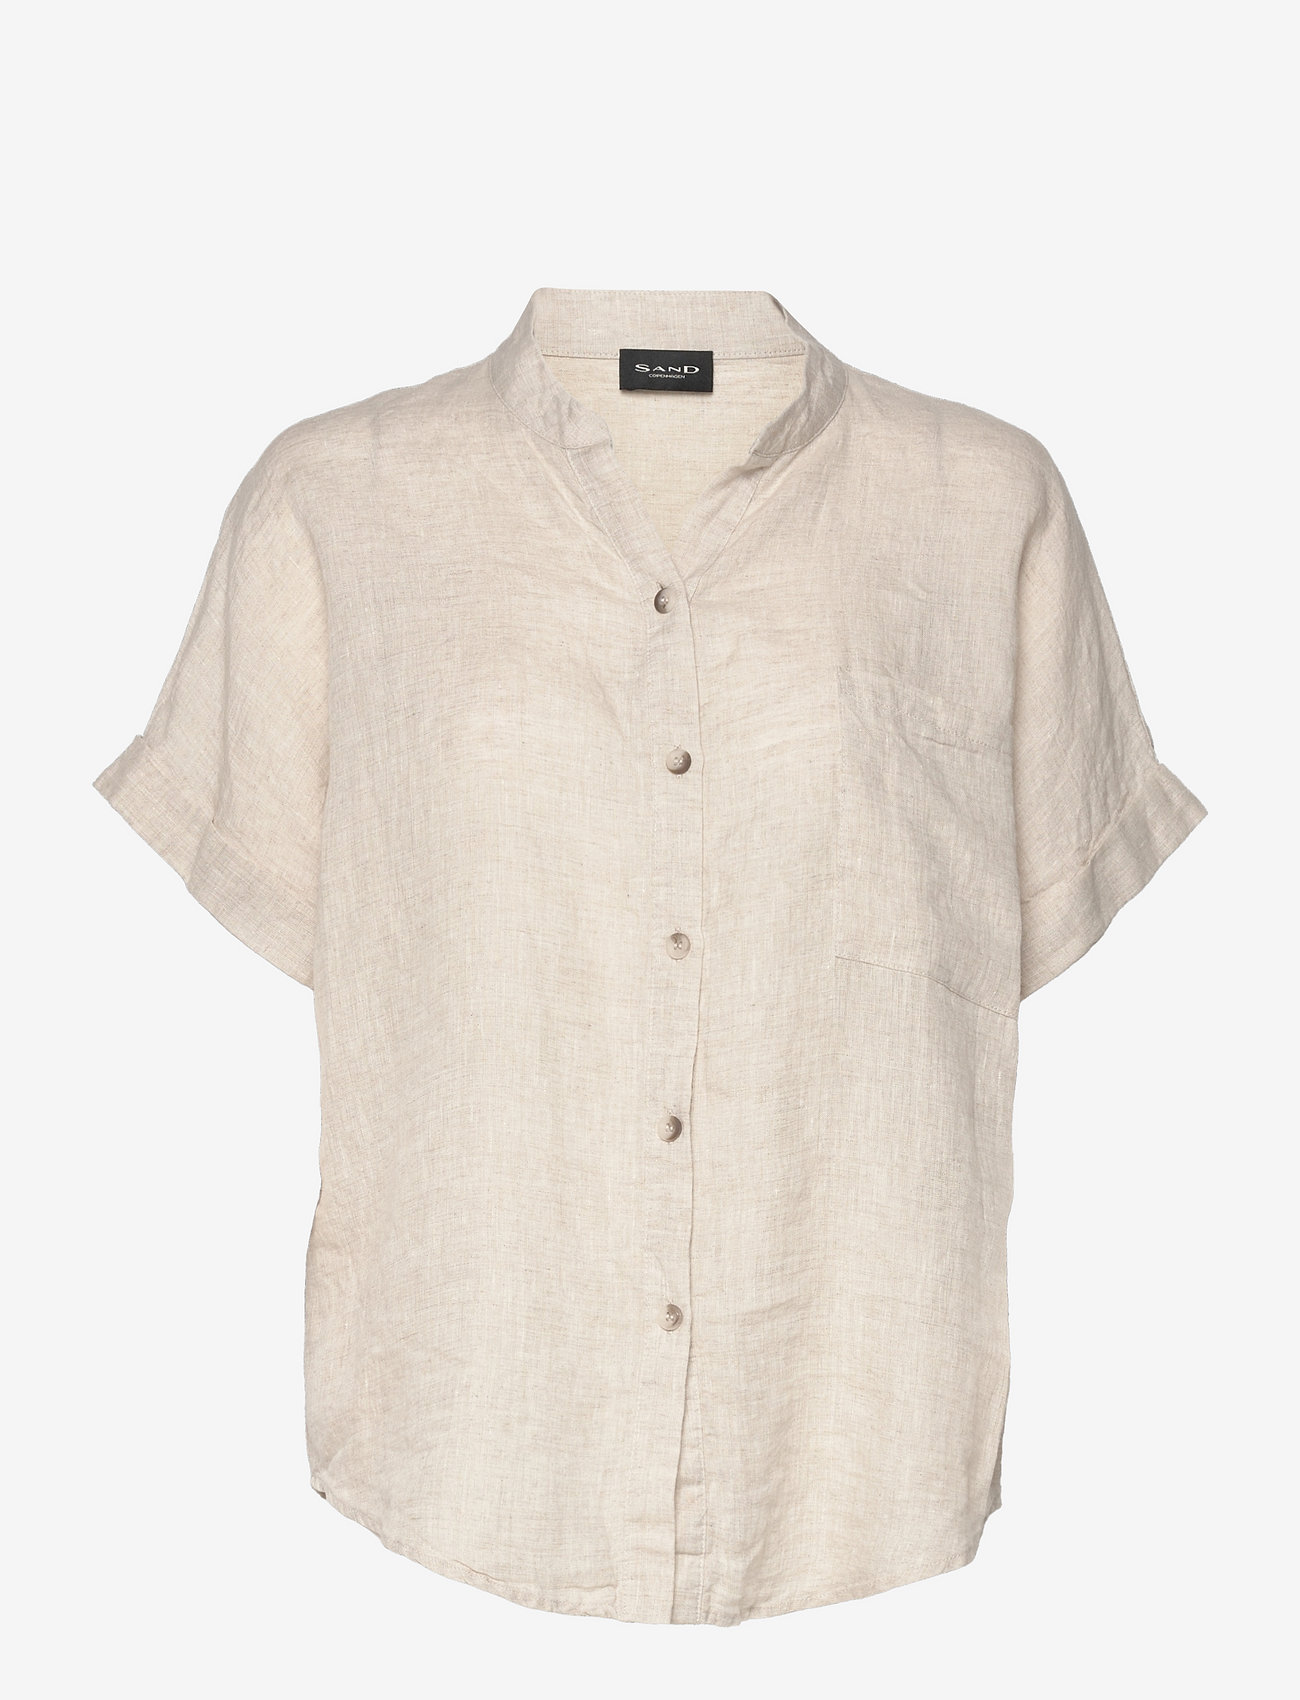 SAND - 3464 - Adria - kortærmede skjorter - off white - 0